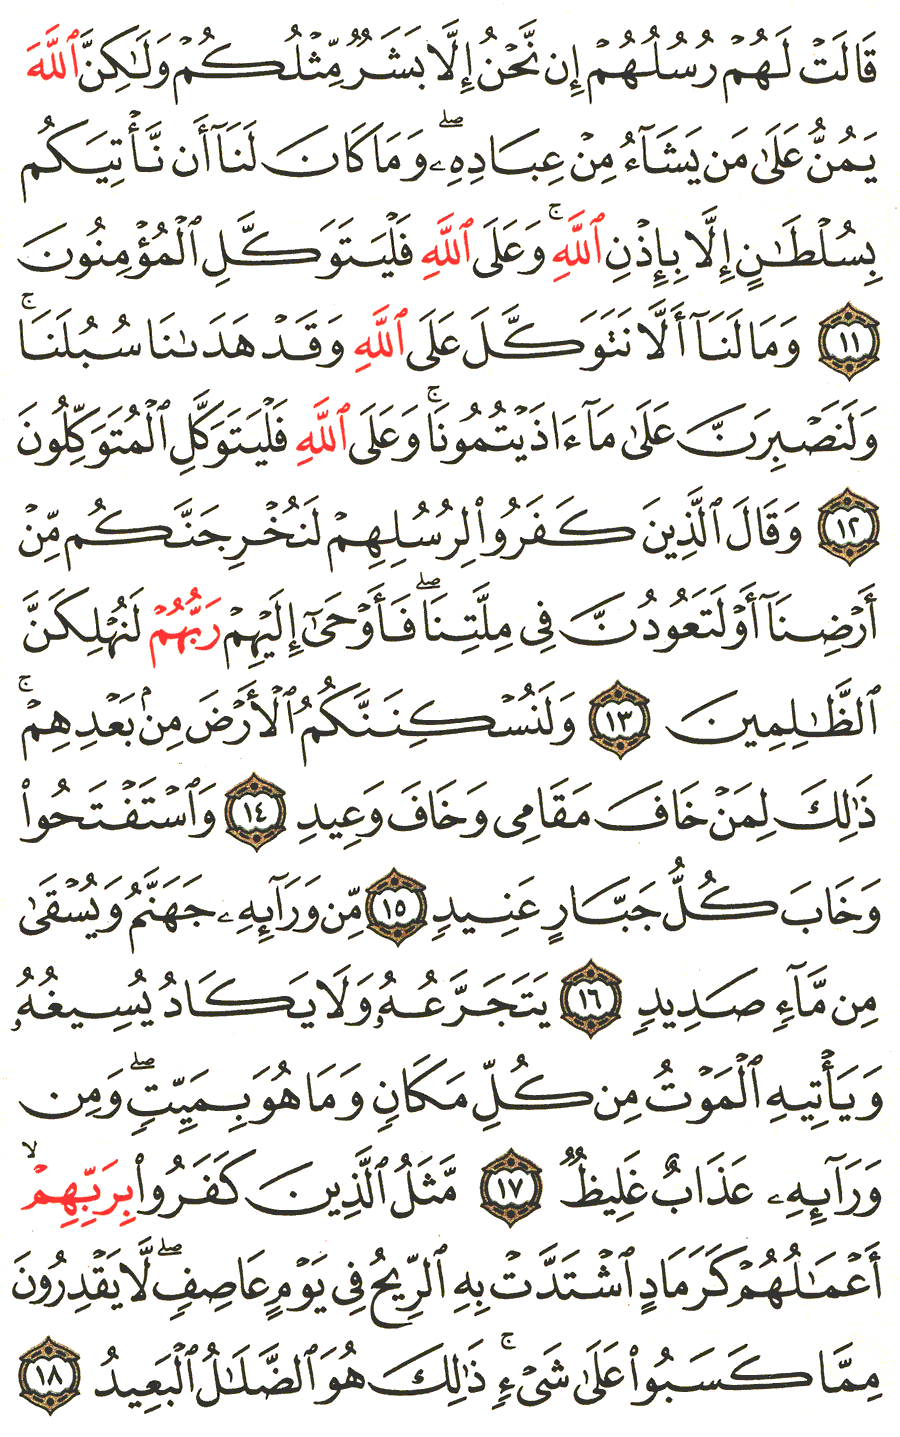 الصفحة 257 من القرآن الكريم